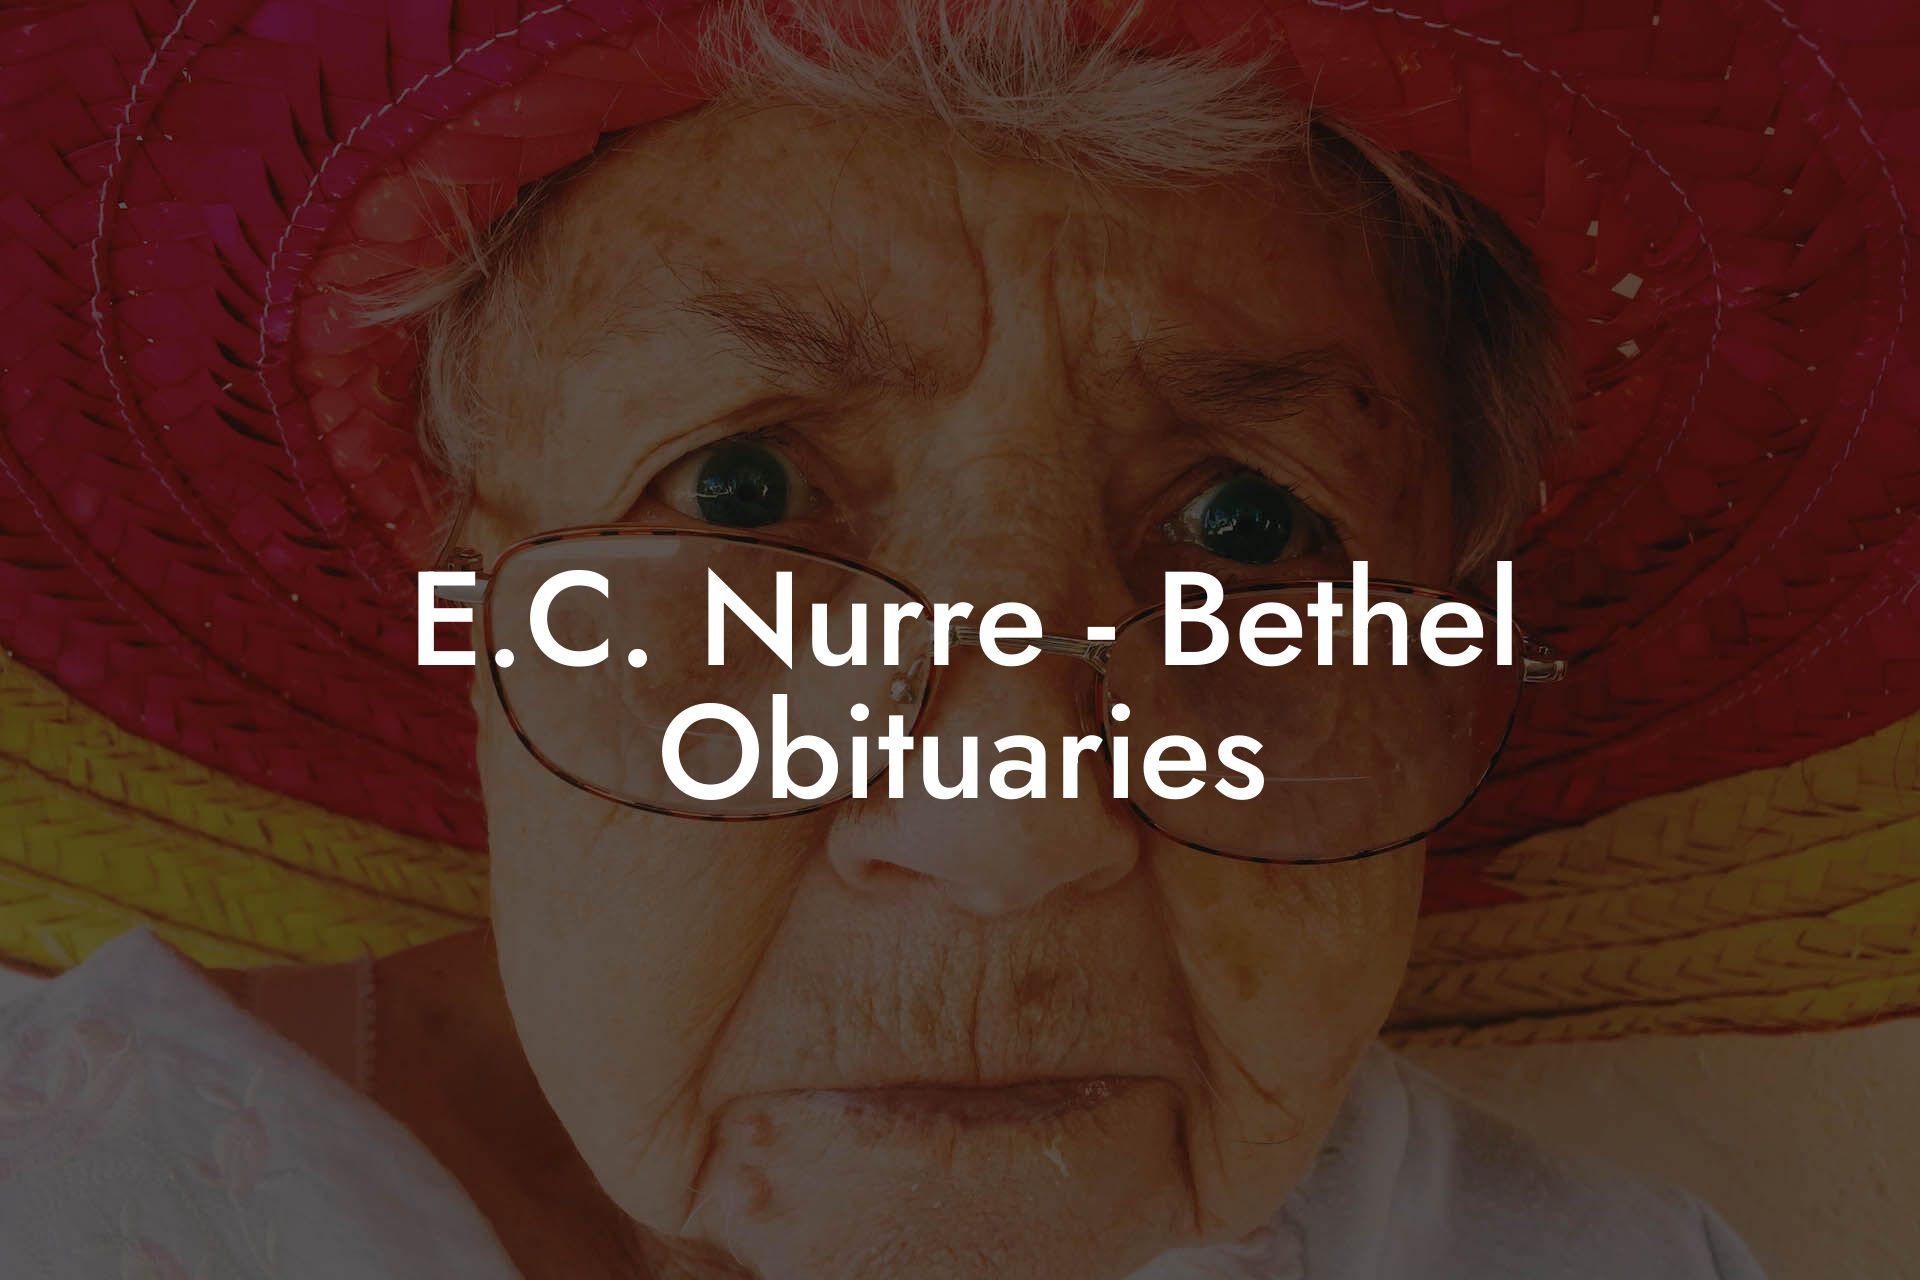 E.C. Nurre - Bethel Obituaries